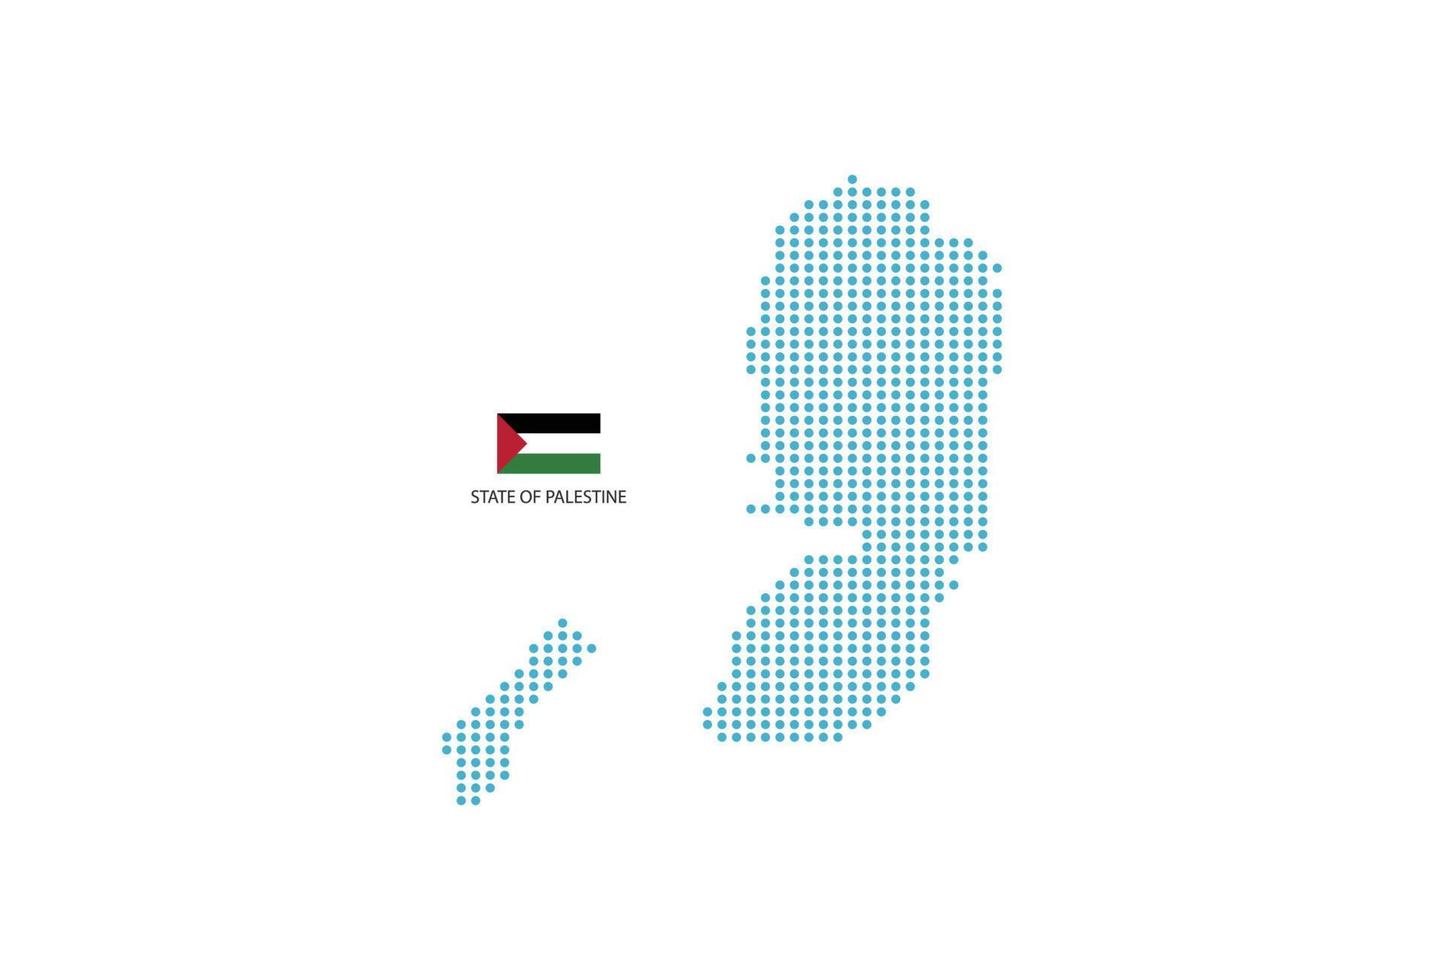 círculo azul del diseño del mapa del estado de palestina, fondo blanco con la bandera del estado de palestina. vector